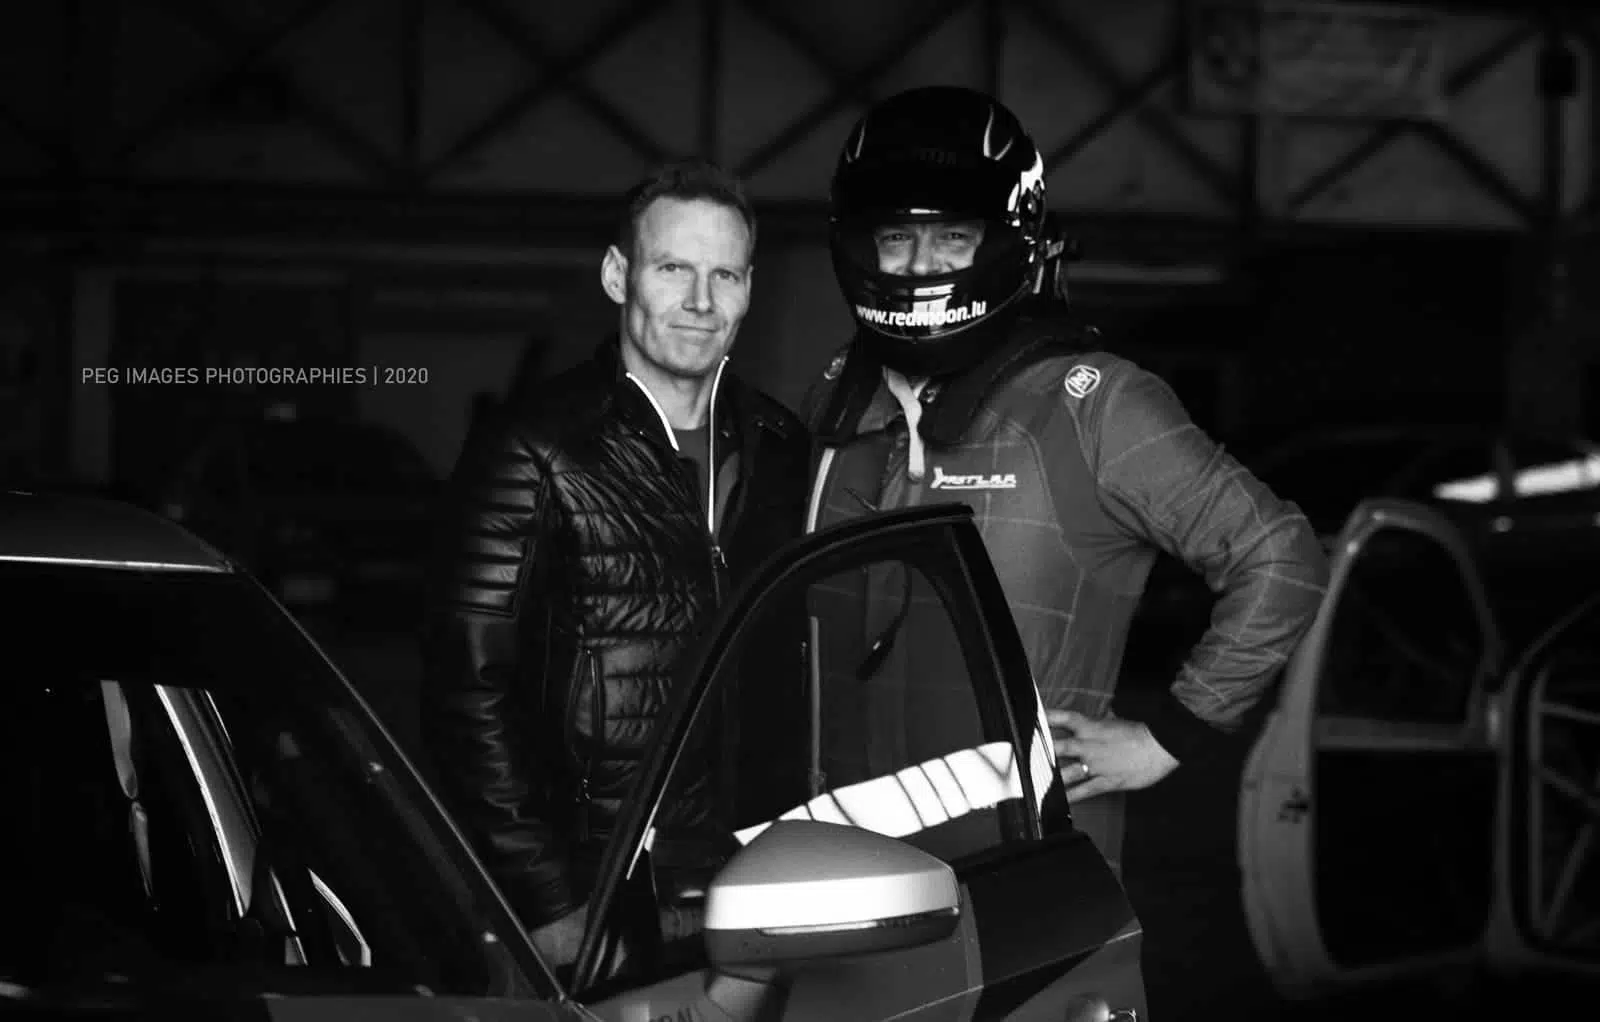 Peter and Damien - RedMoon Racing